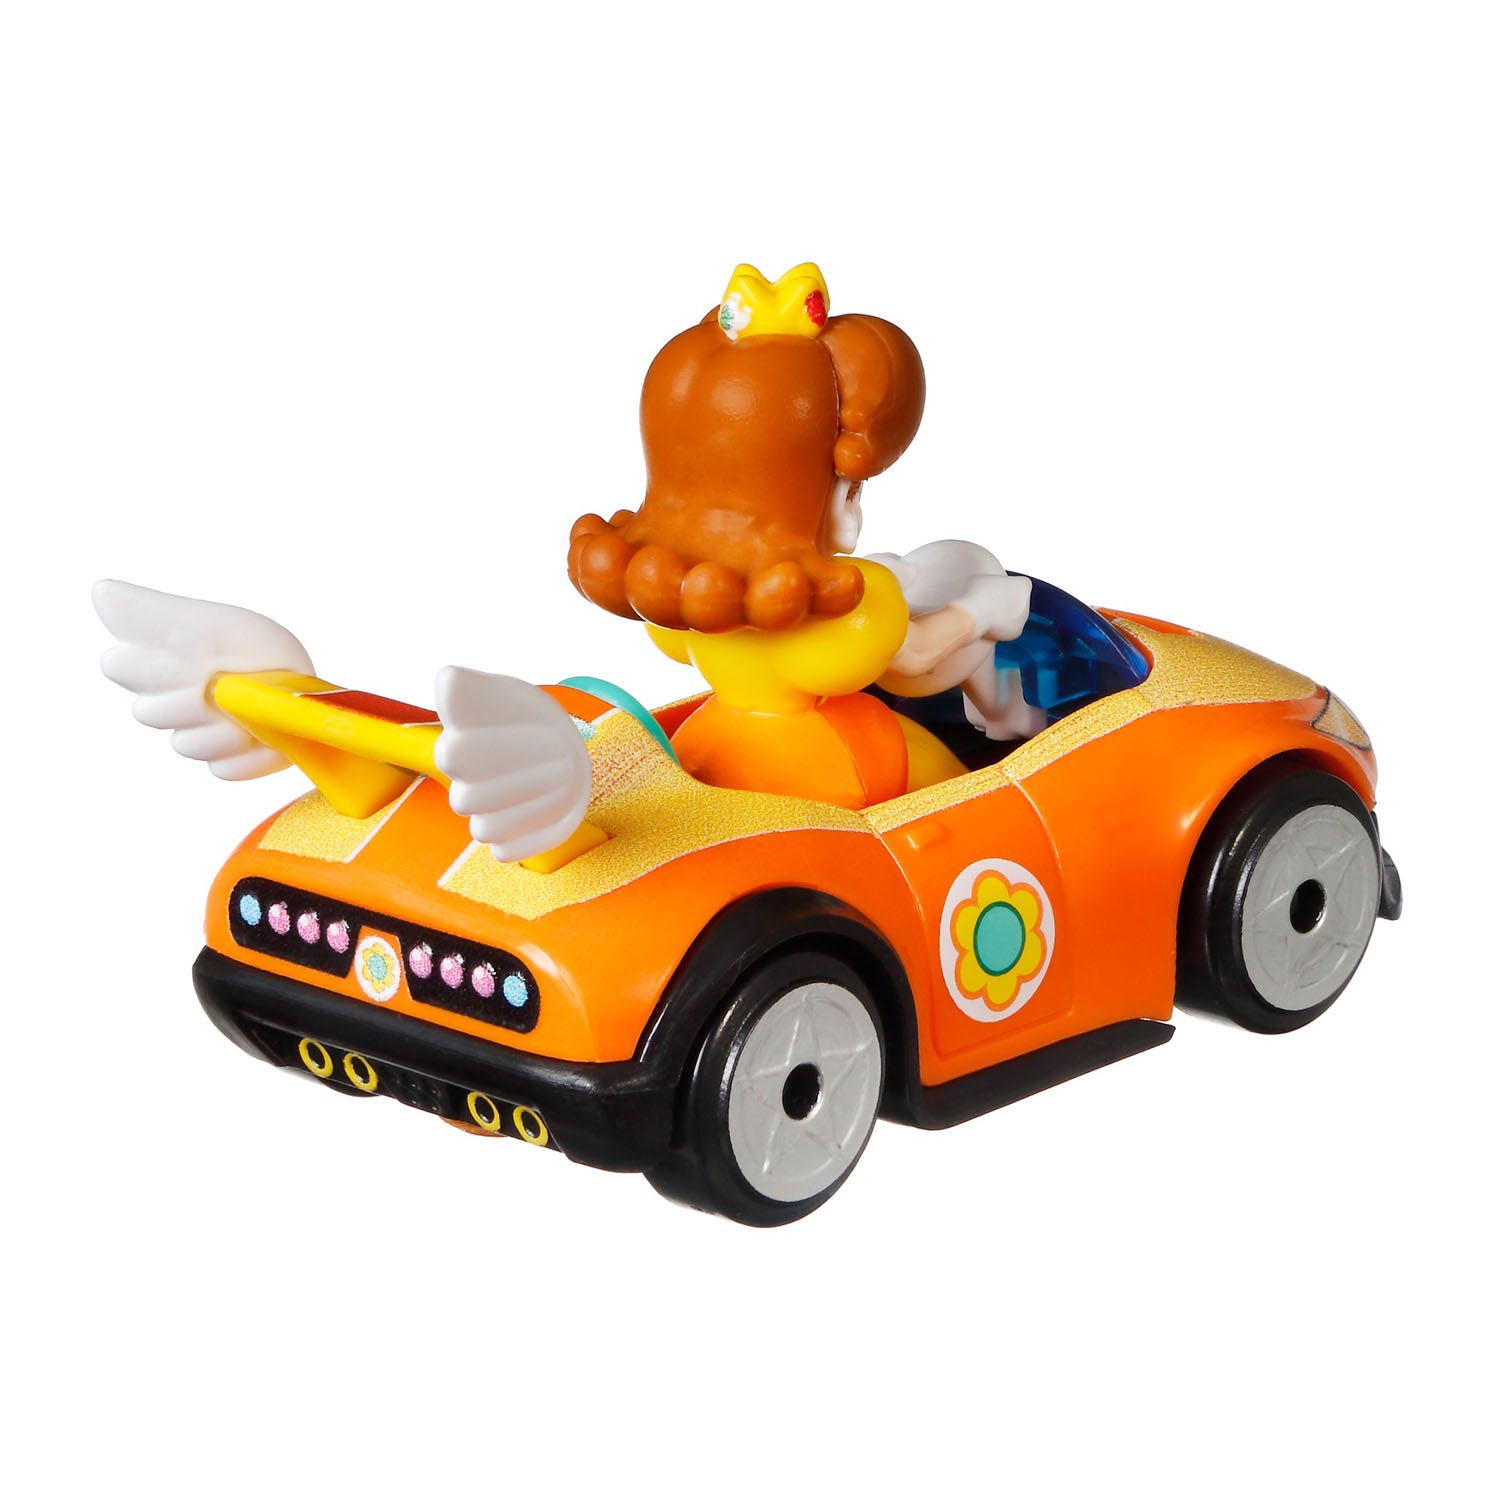 Hot Wheels Mario Kart Fahrzeug - Prinzessin Daisy